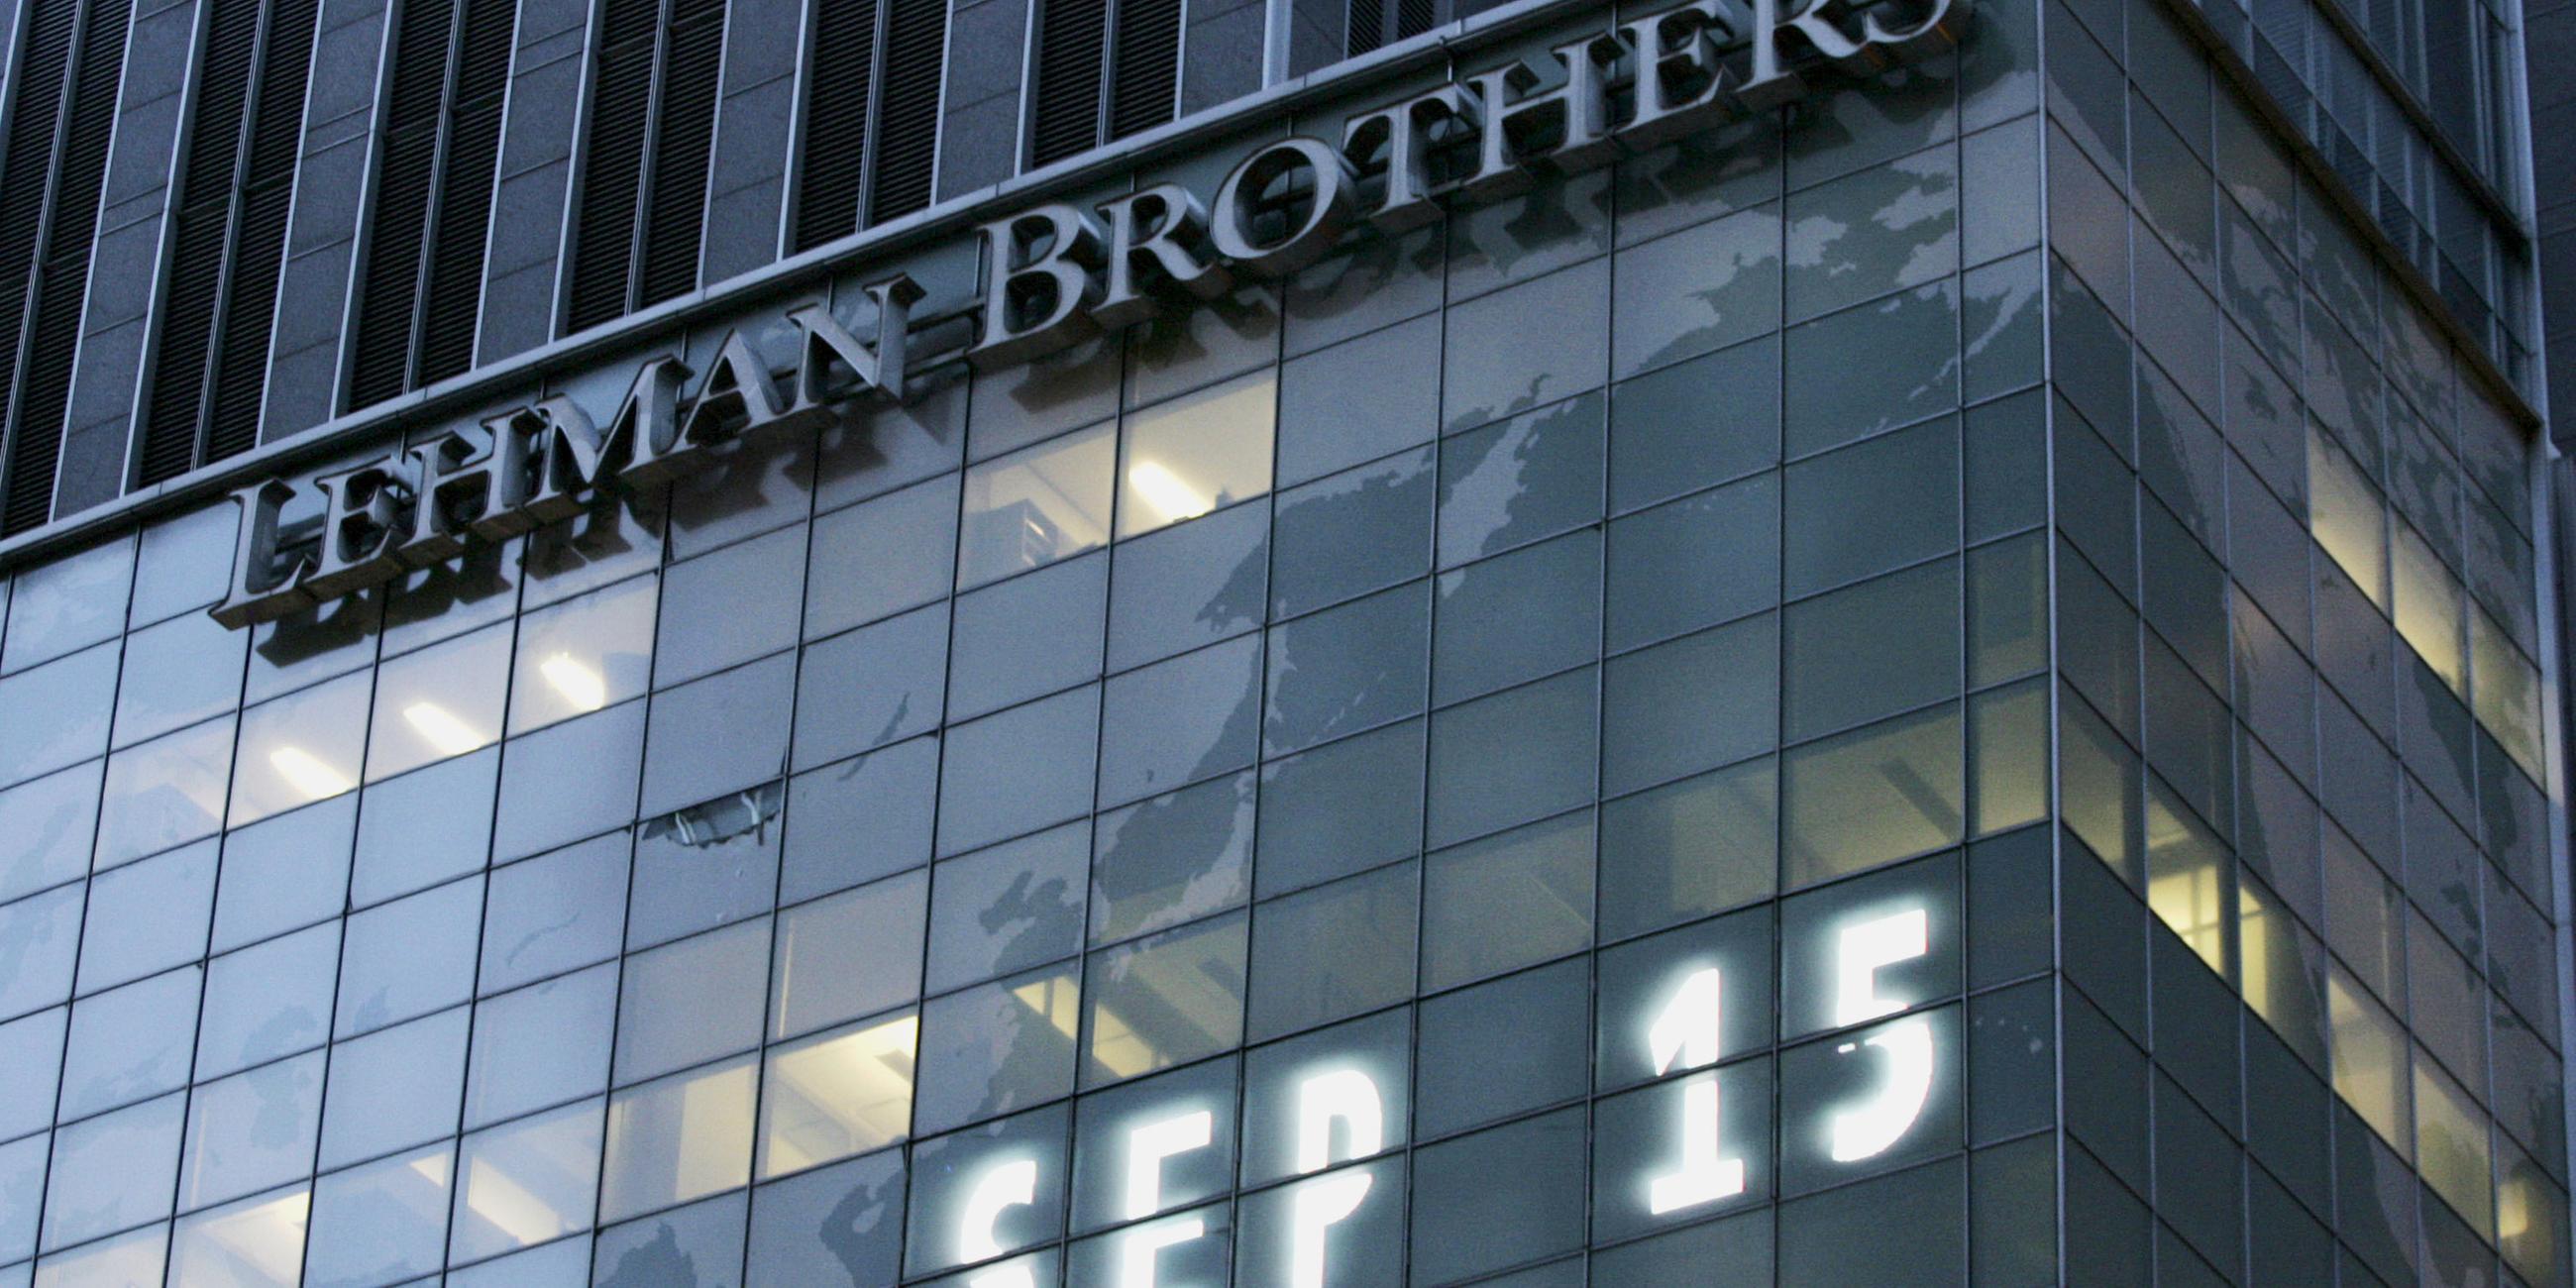 Der Hauptsitz von Lehman Brothers in New York am Times Square.